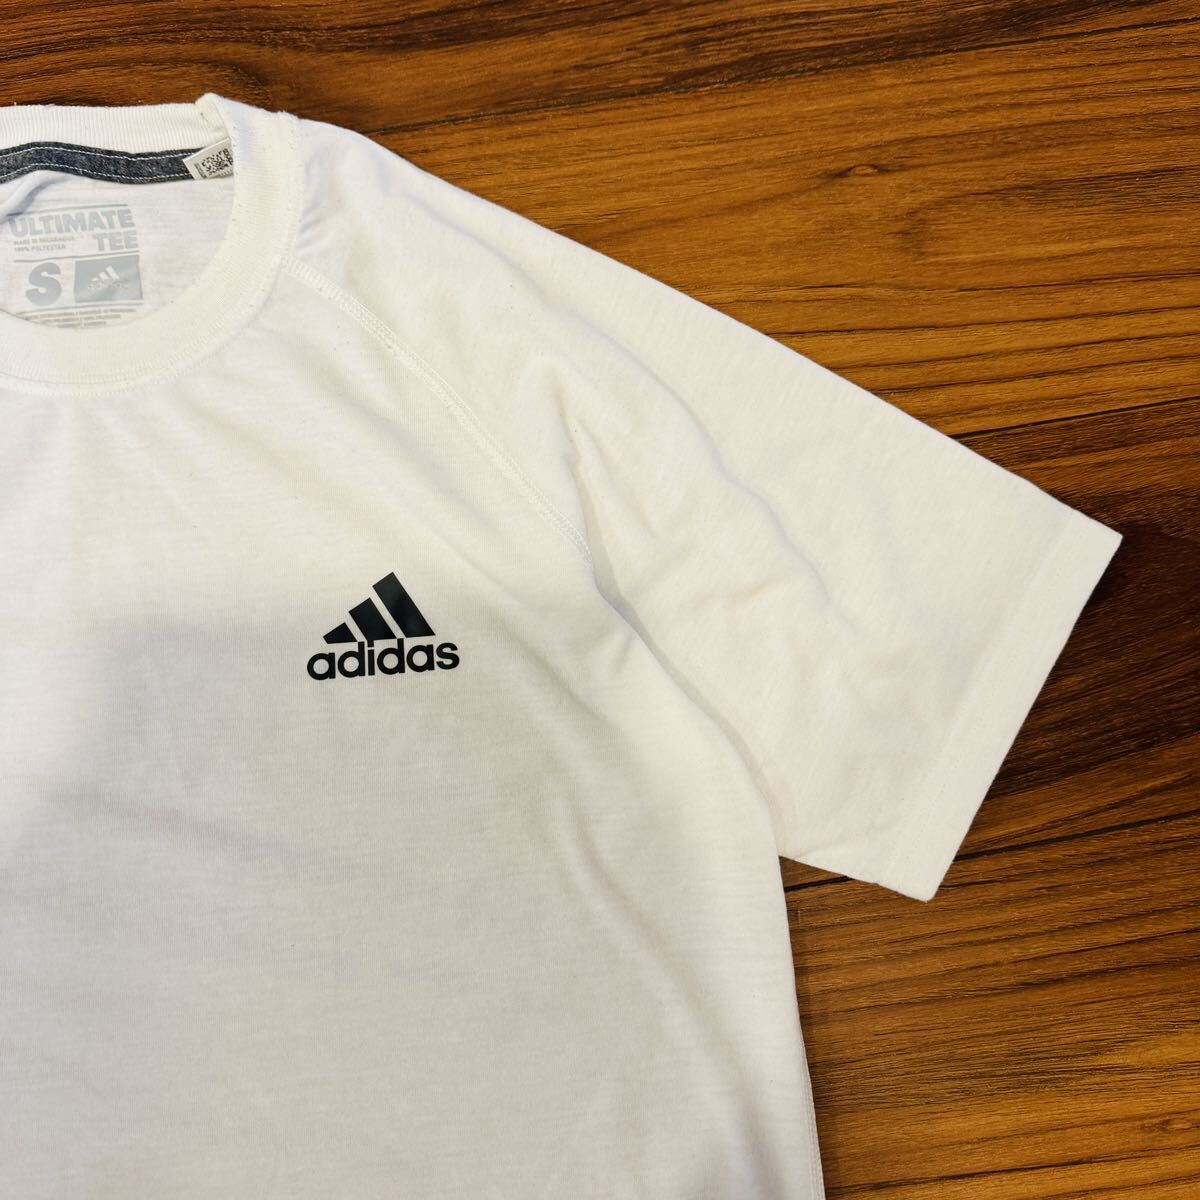 アディダス 半袖Tシャツ S メンズ ホワイト スポーツブランド ブランド古着の画像4